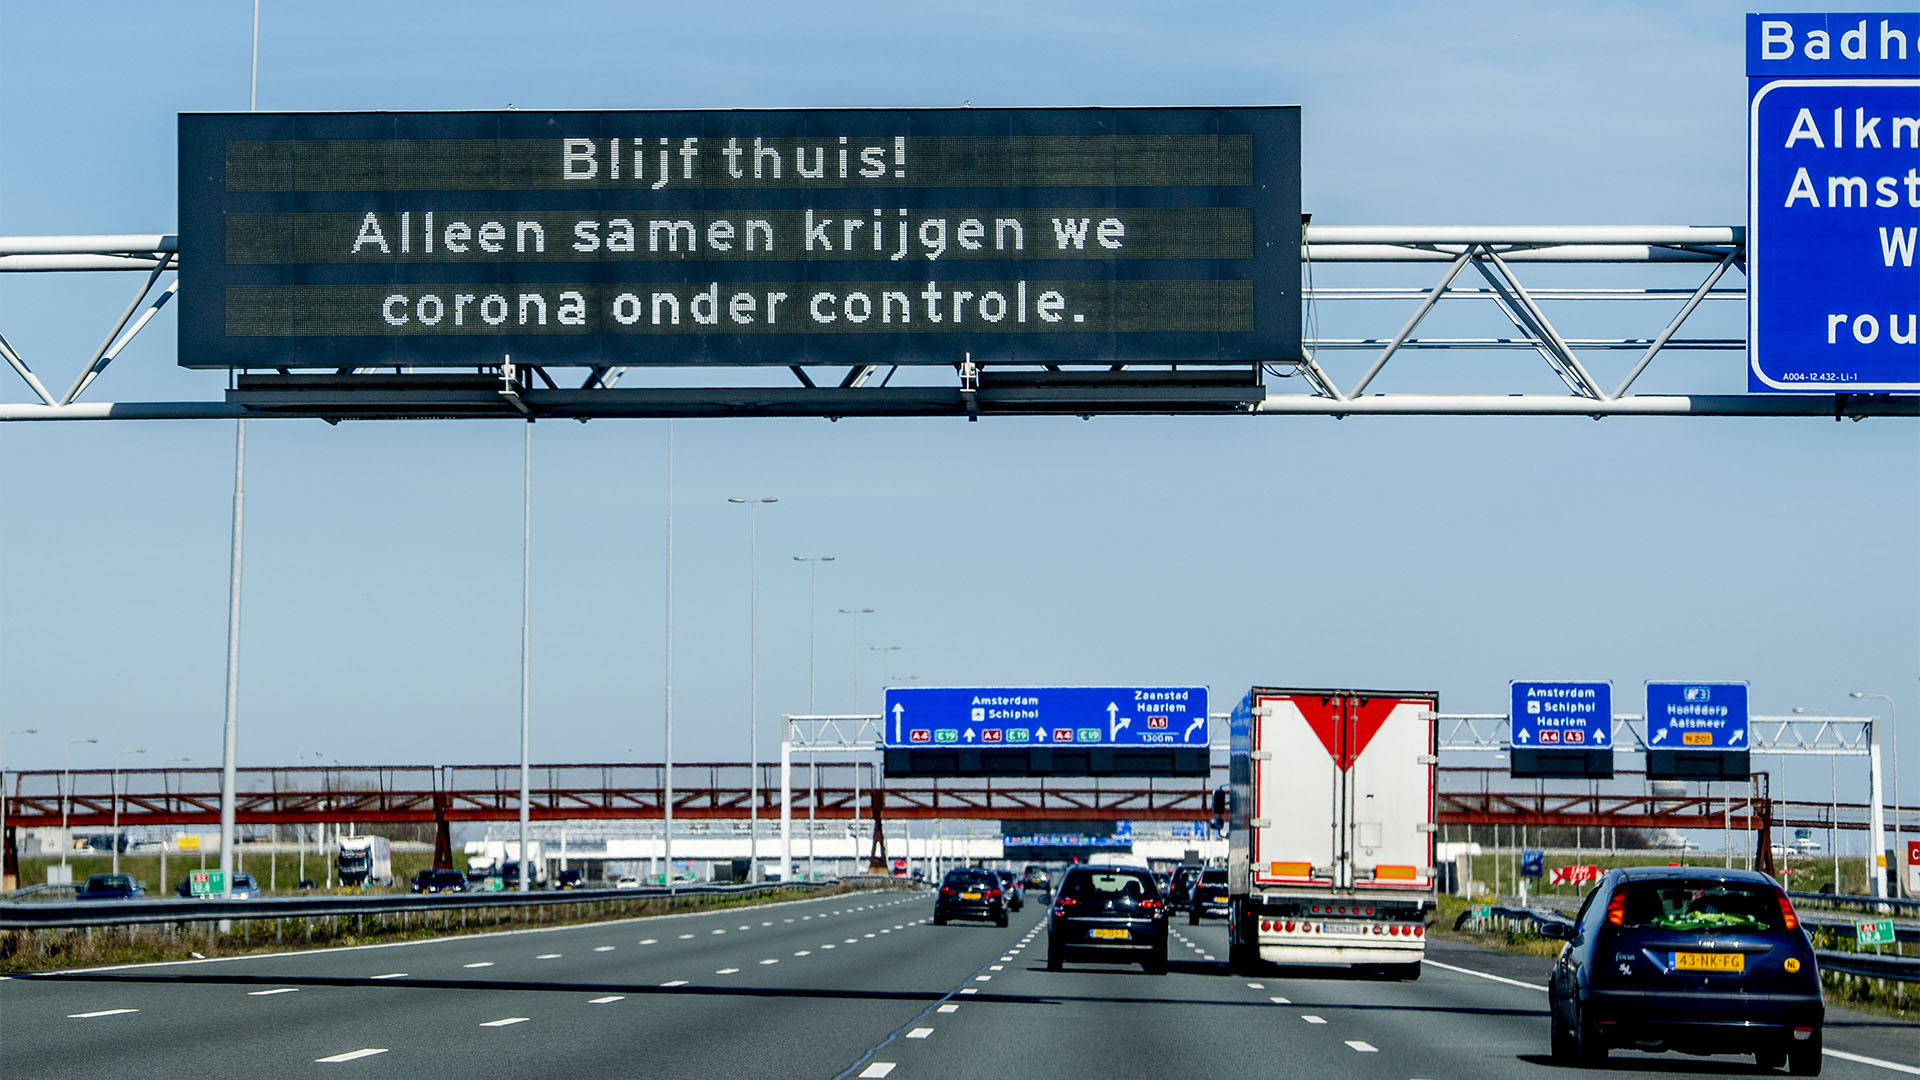 Snelweg in Nederland met matrixbord met waarschuwing tegen coronavirus